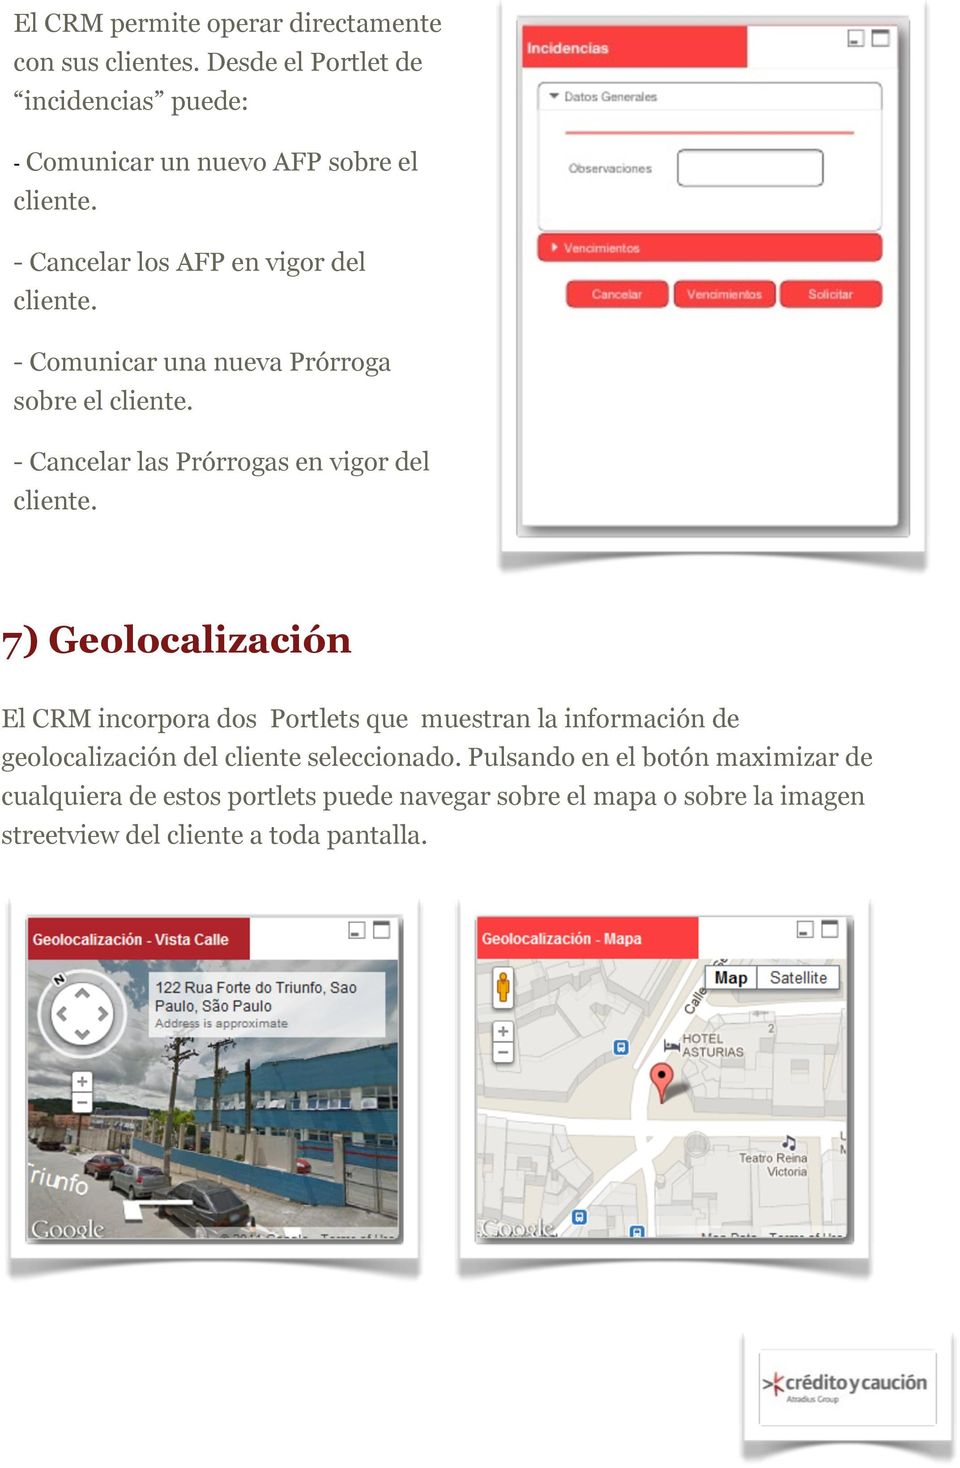 7) Geolocalización El CRM incorpora dos Portlets que muestran la información de geolocalización del cliente seleccionado.